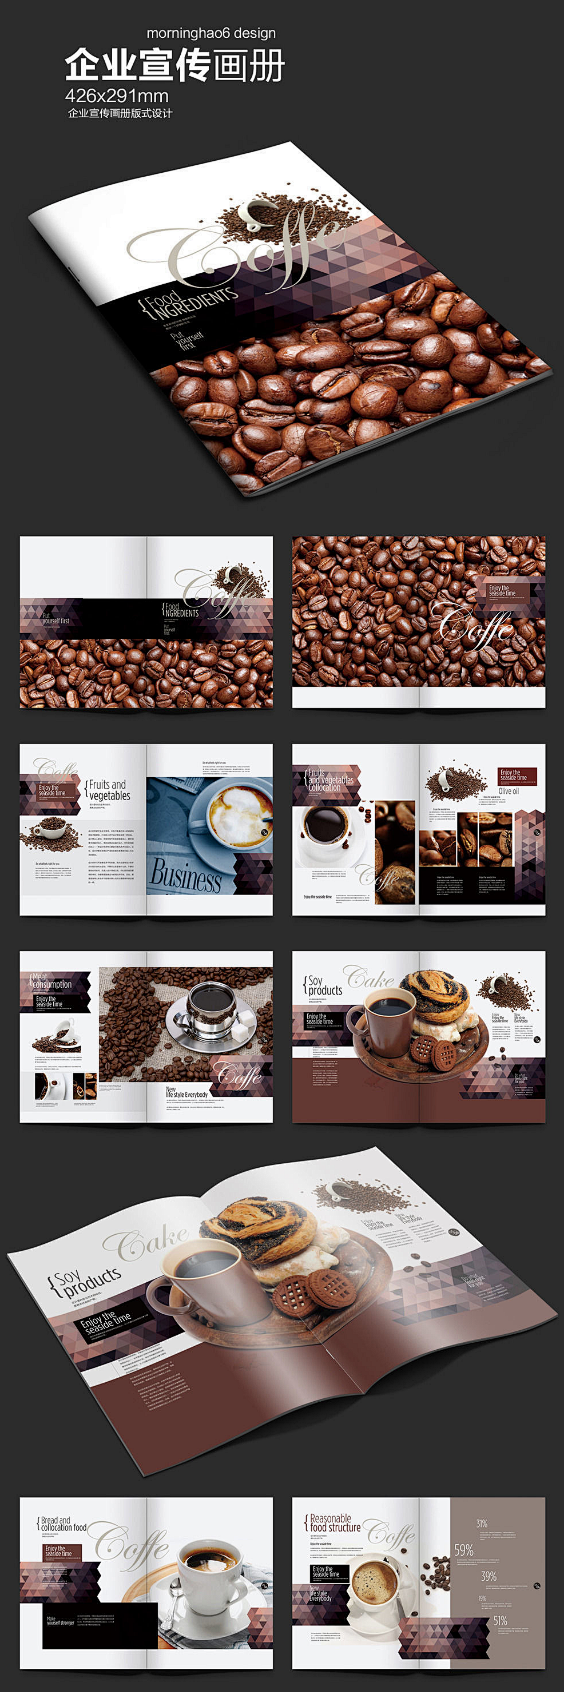 厚重咖啡画册版式设计PSD素材下载_企业...